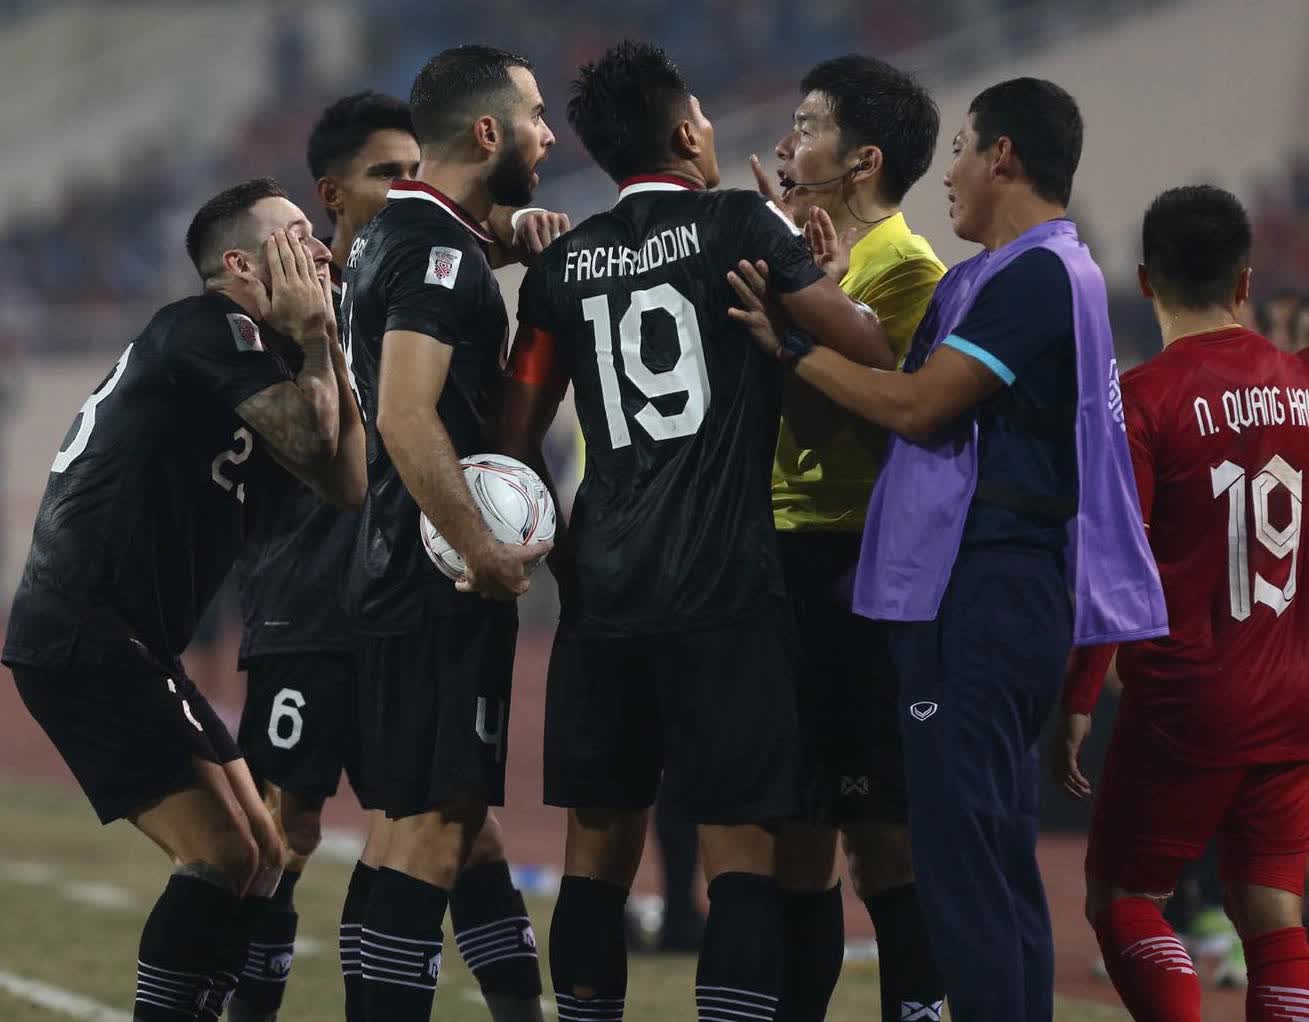 Văn Hậu nhận thẻ vàng tranh cãi, trợ lý Anh Đức bị cầu thủ Indonesia đẩy - Ảnh 3.